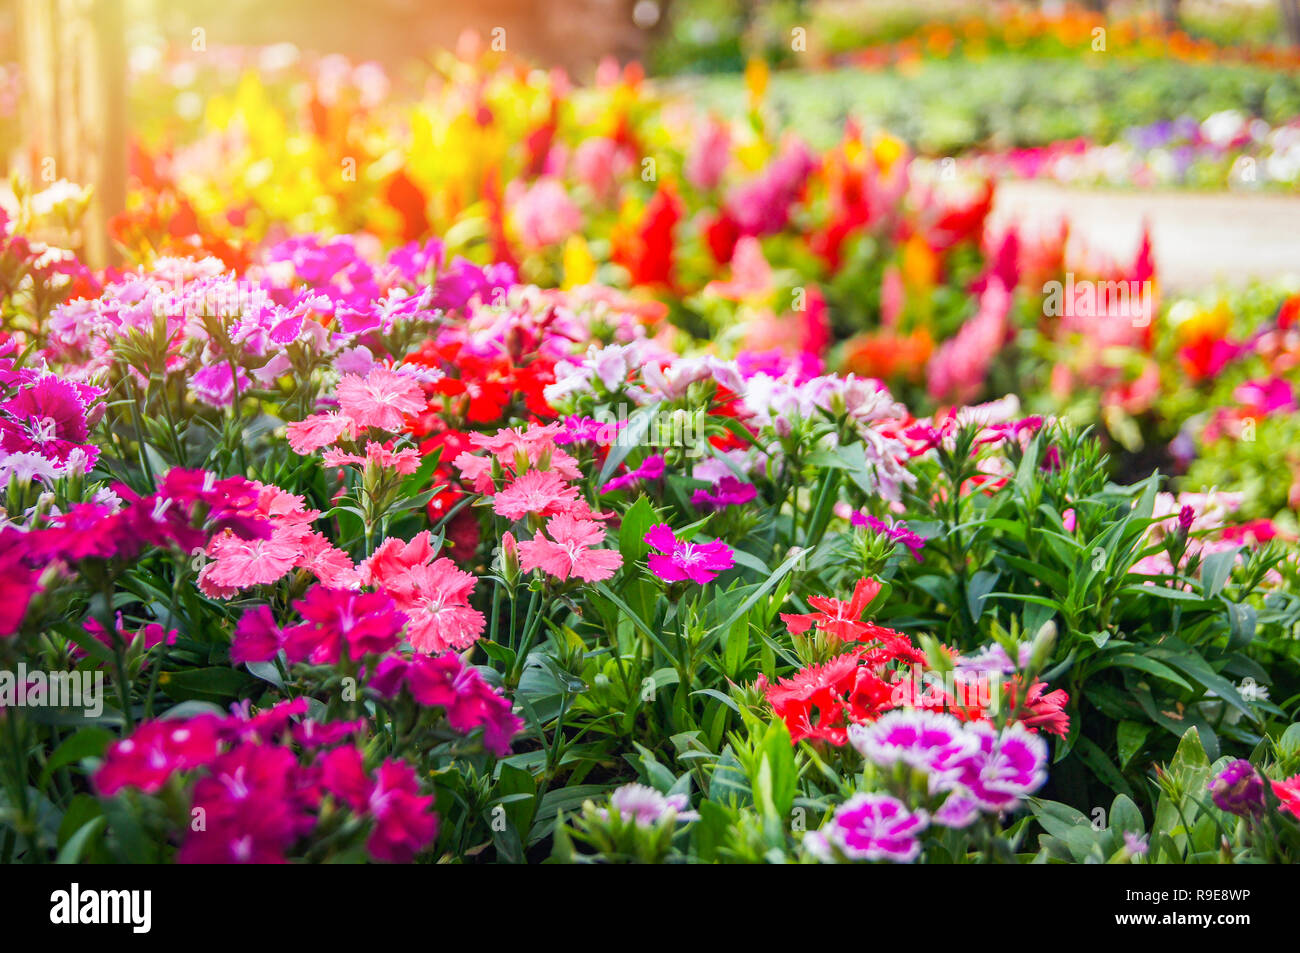 Bunte garten Blume/Multi Color grünen Rasen in farbenprächtigen Landschaft Pflanzen und Blumen blühende Frühling Garten mit Dianthus Celosia argentea oder gefiederten Stockfoto